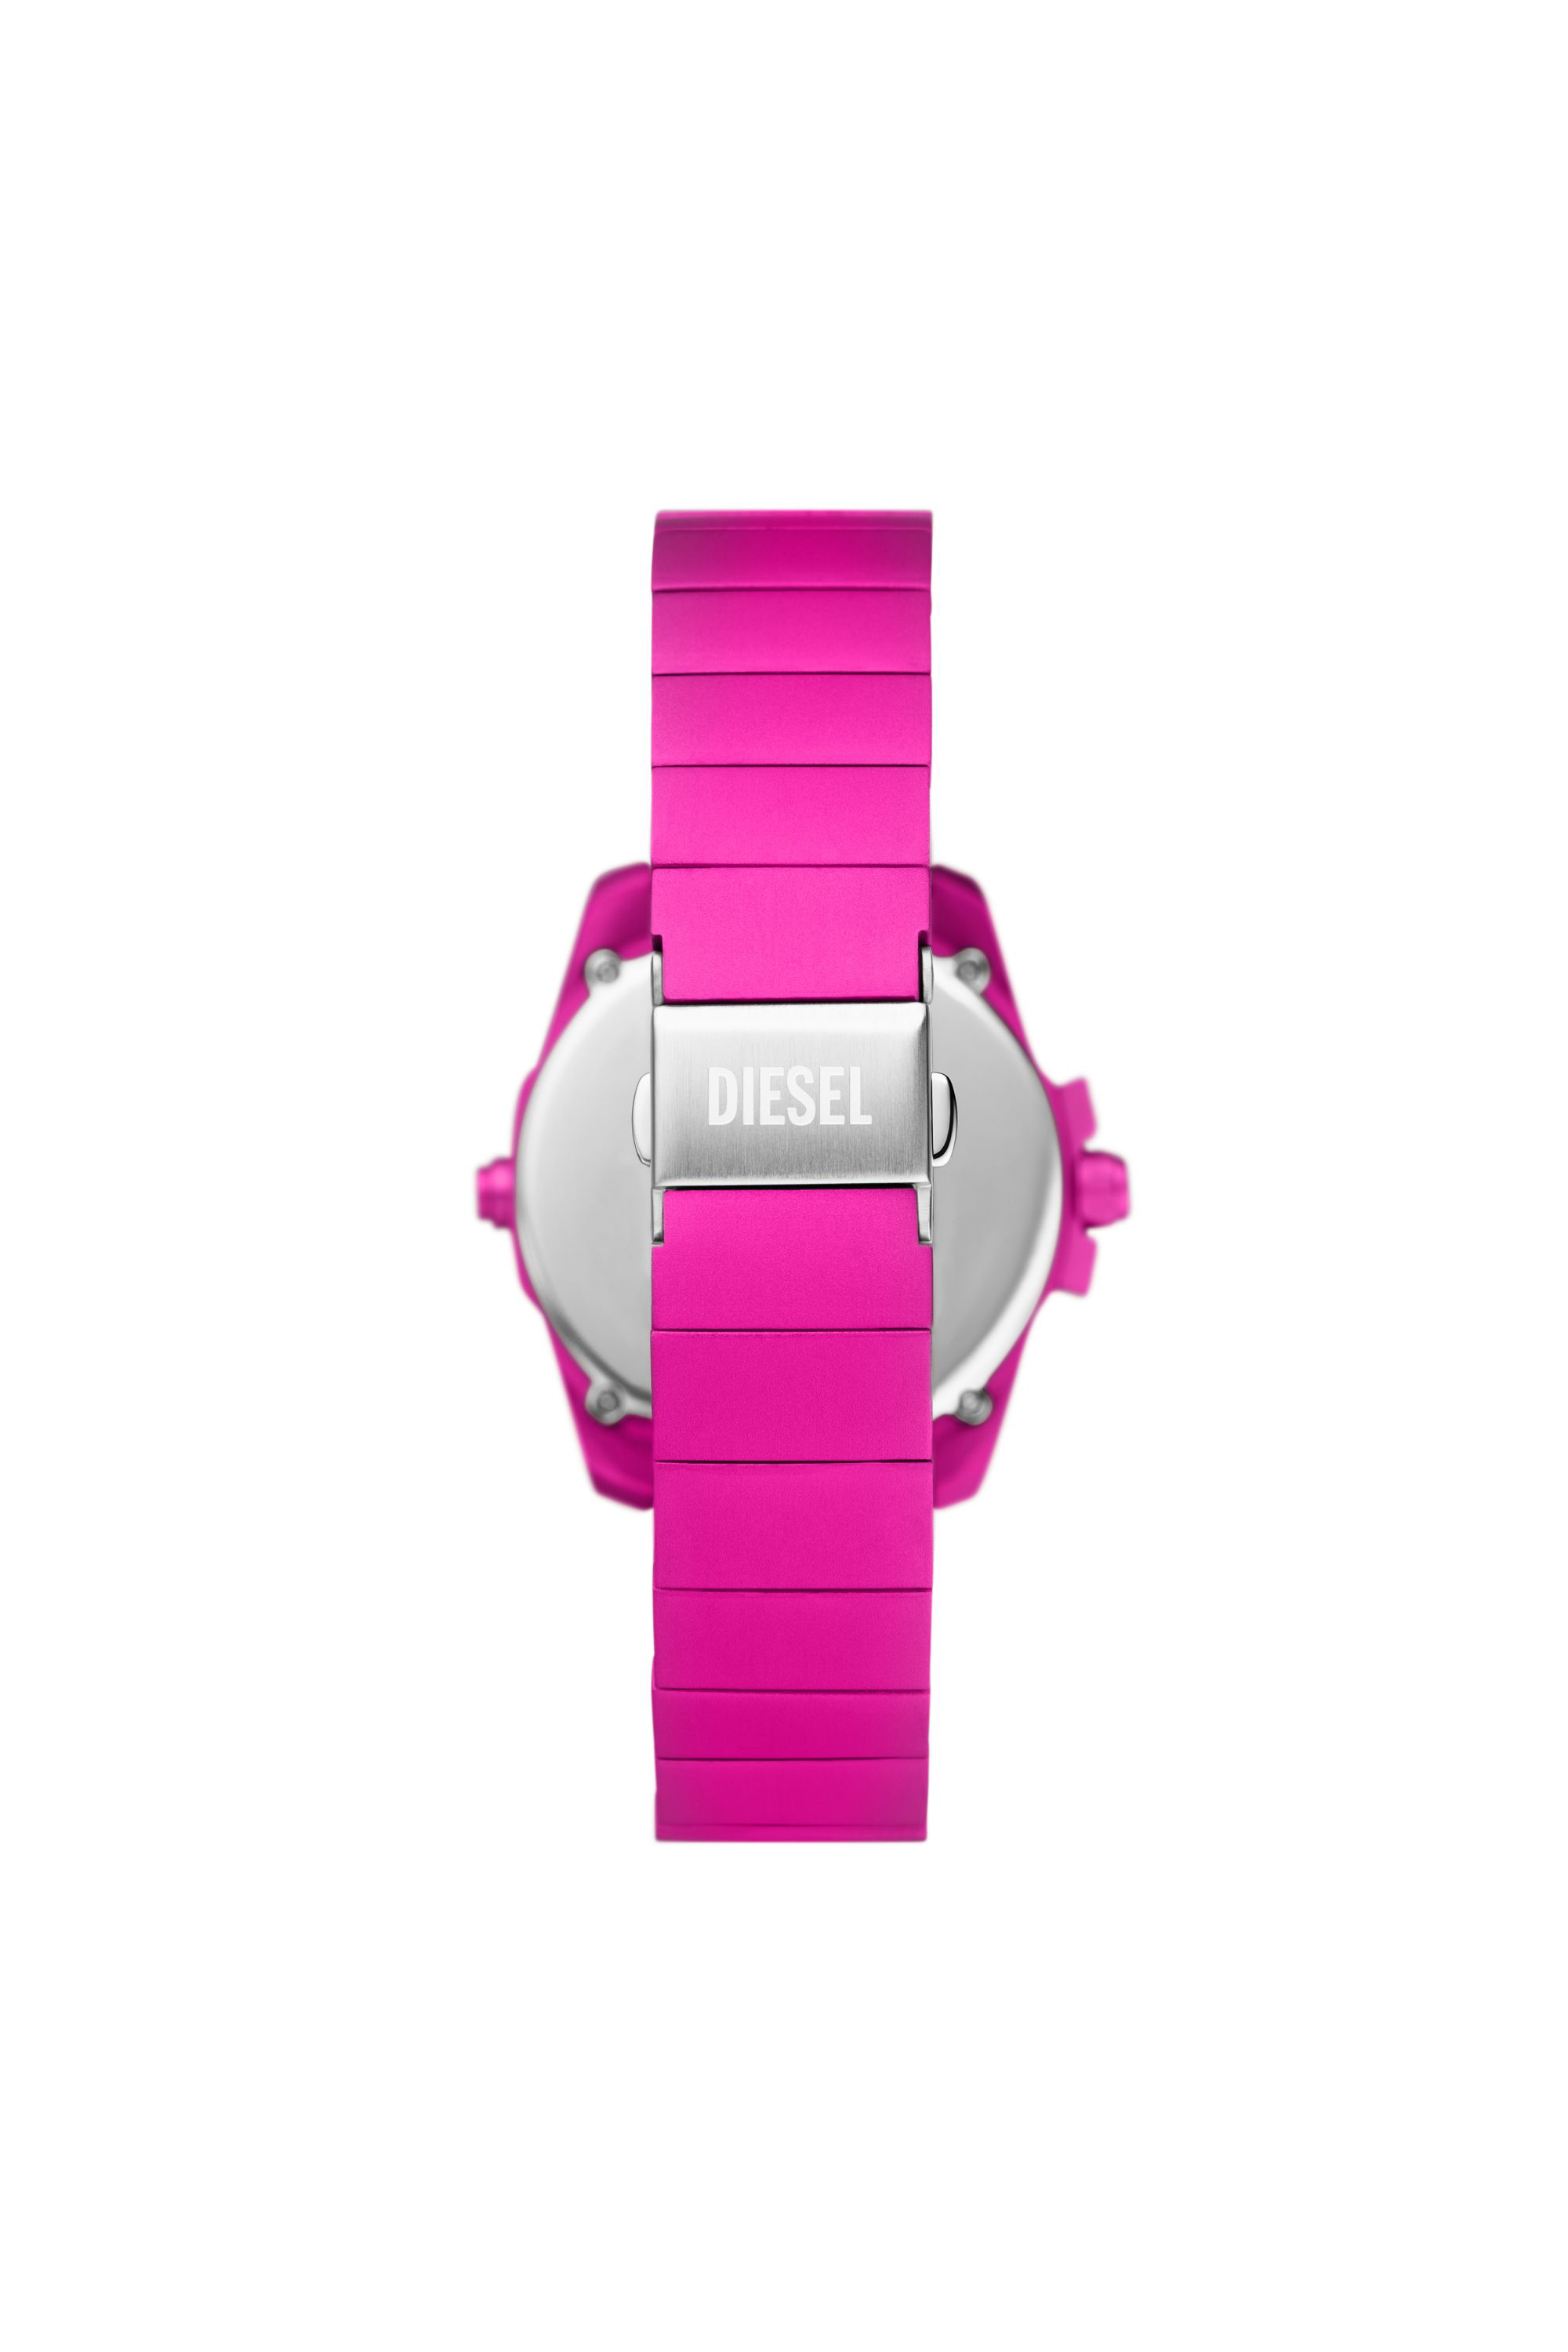 Diesel - DZ2206 WATCH, Man Baby chief digital pink aluminum watch in Pink - Image 2